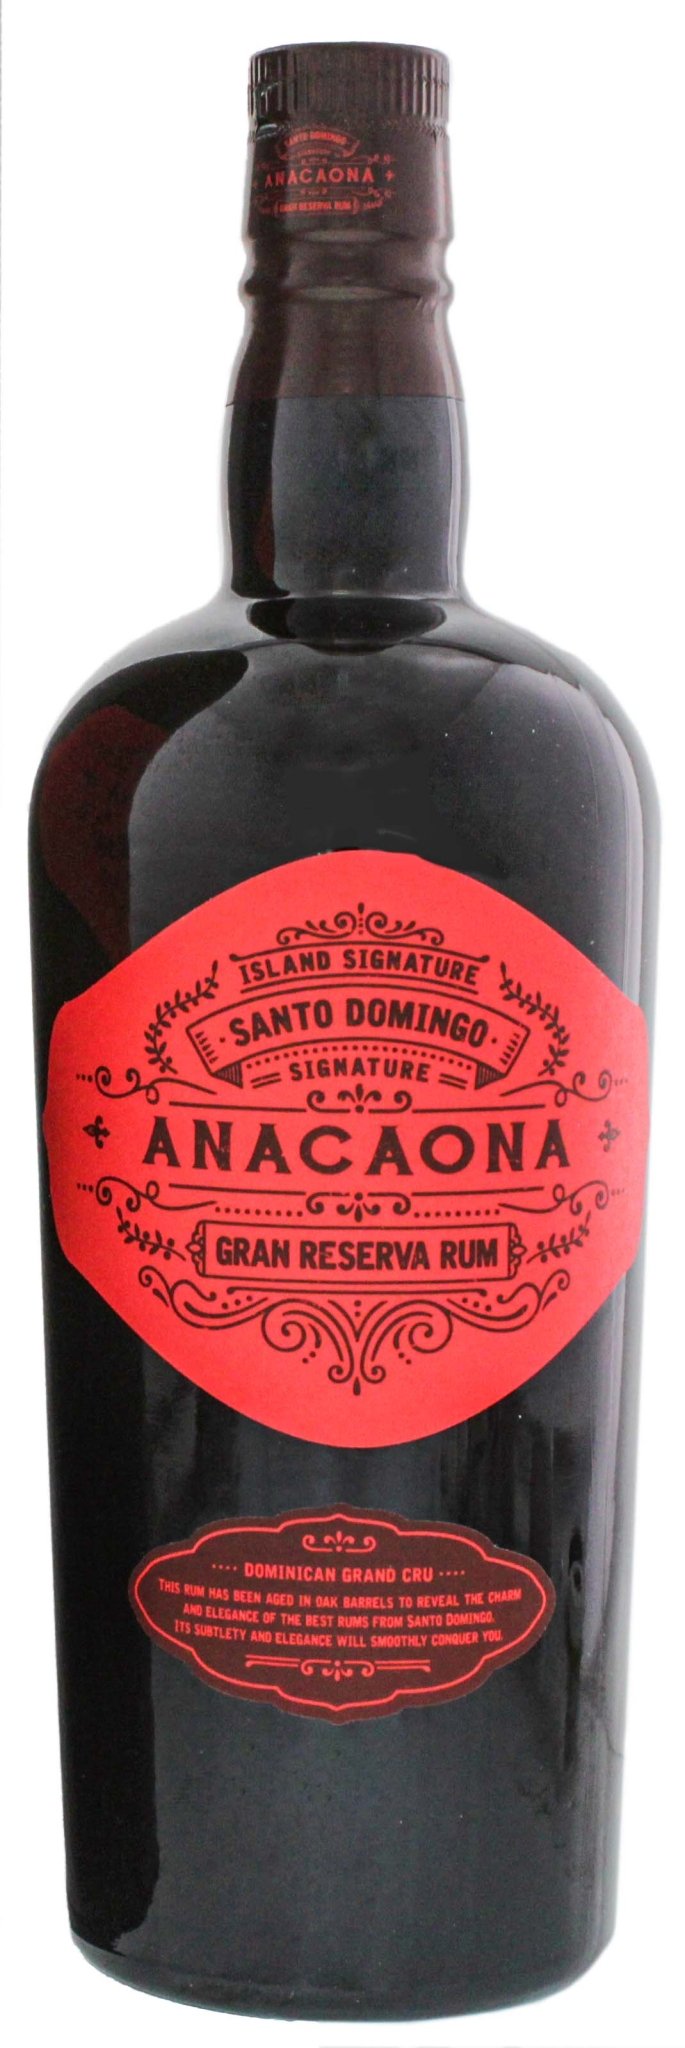 Signature Anacaona Santo Domingo Gran Reserva Rum 0,7 ltr. GB 40% - AllSpirits